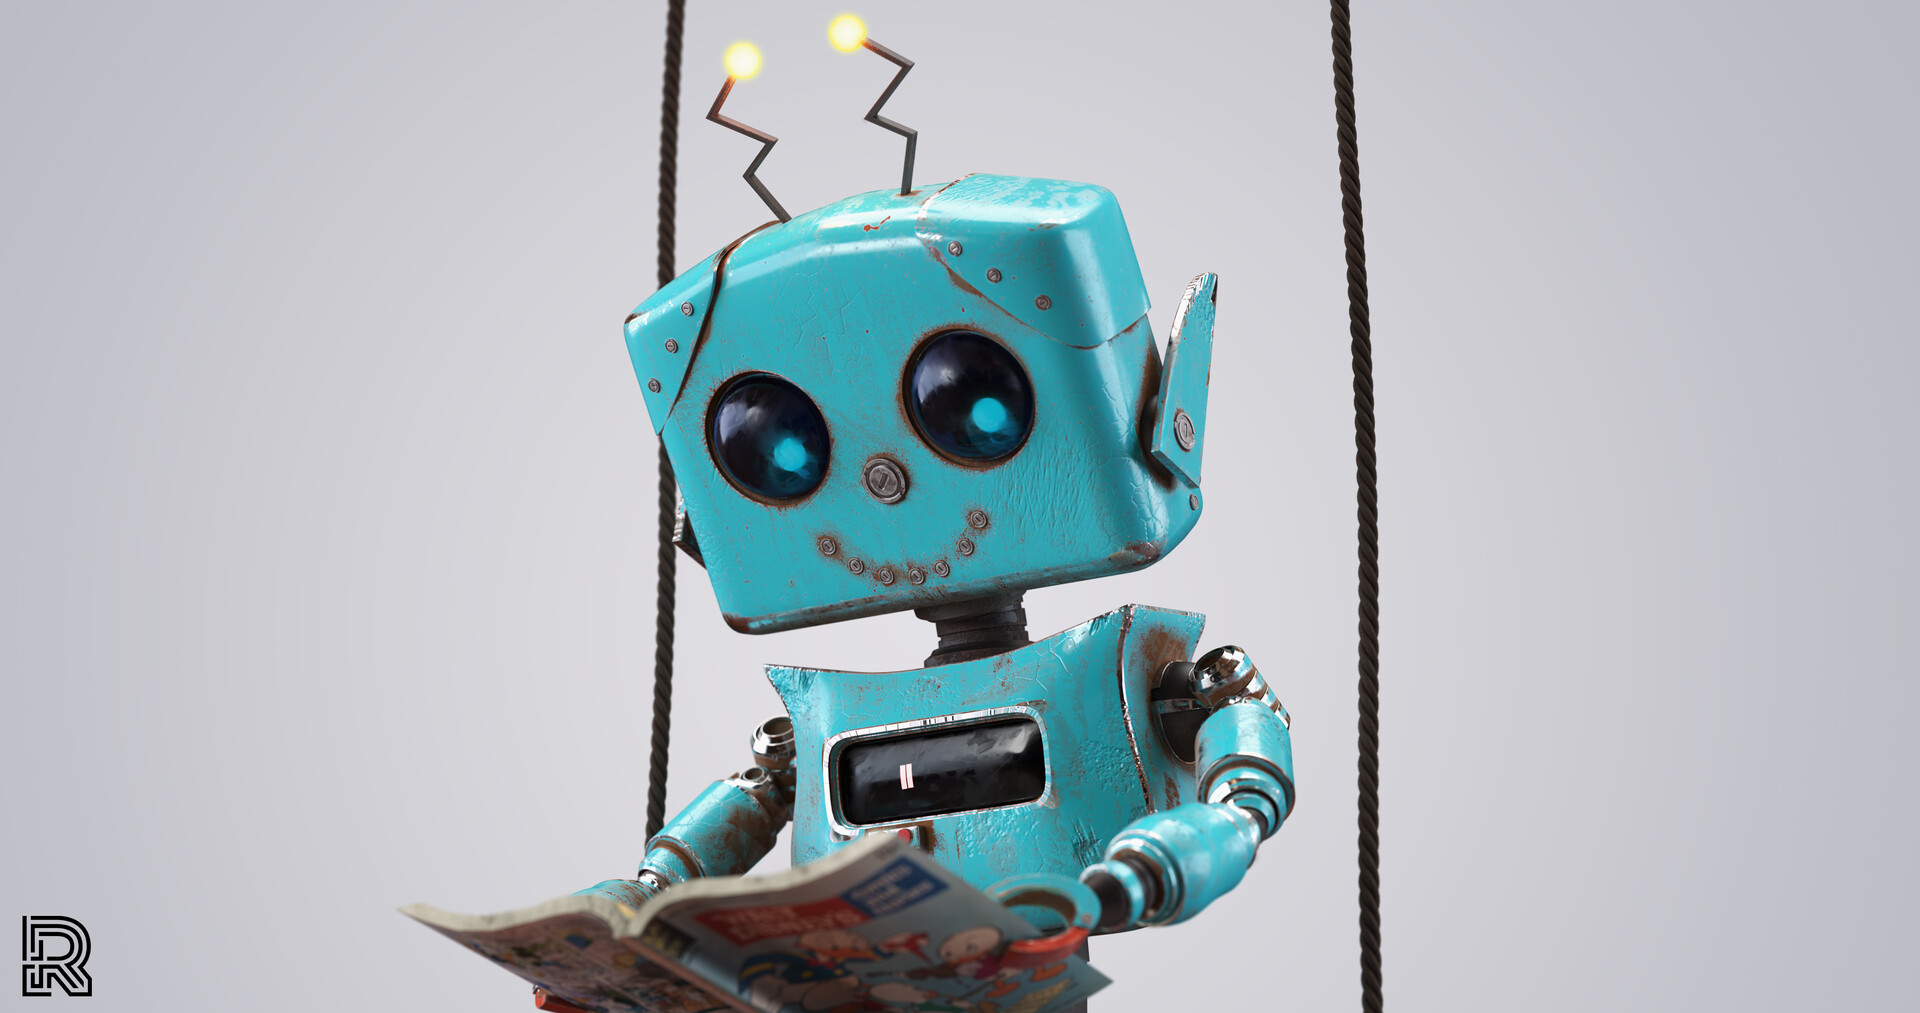 Các bạn ơi! Hãy xem hình ảnh đáng yêu của chú robot chibi siêu dễ thương trong tương lai 2024 này nào! Với công nghệ mới nhất, robot của chúng ta sẽ mang lại những phút giây giải trí và hỗ trợ công việc tuyệt vời cho bạn. Với tính năng thông minh, chú robot chibi sẽ trở thành người bạn đồng hành đáng yêu và trung thành của bạn trong thế giới sống động và phát triển của chúng ta!